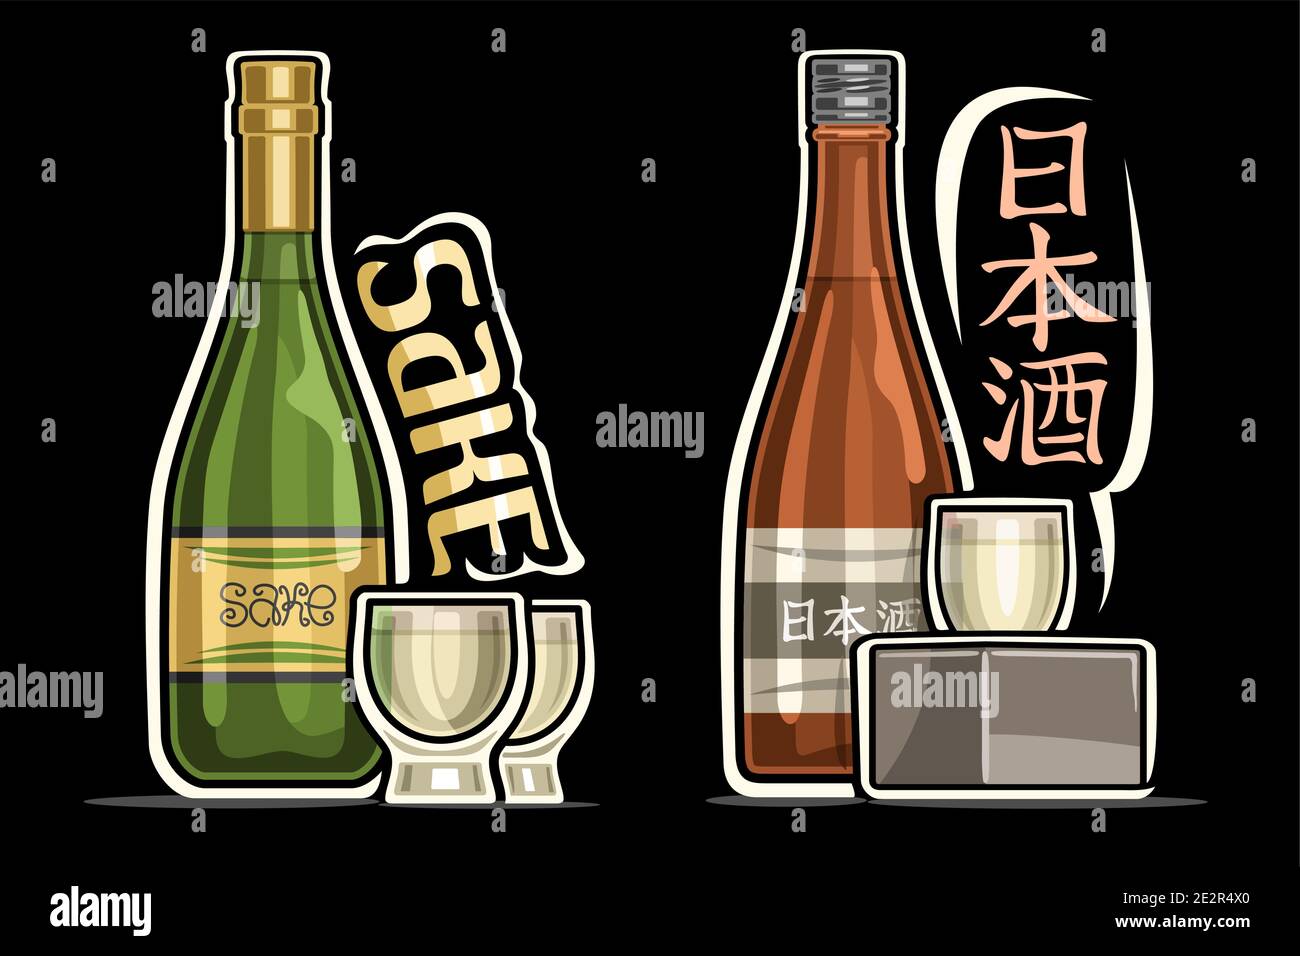 Vektor-Logos für japanische Sake, skizzieren Illustrationen von klassischen grünen und braunen Flaschen mit dekorativem Etikett und vollen Cartoon-Tassen, einzigartige Beschriftung Stock Vektor